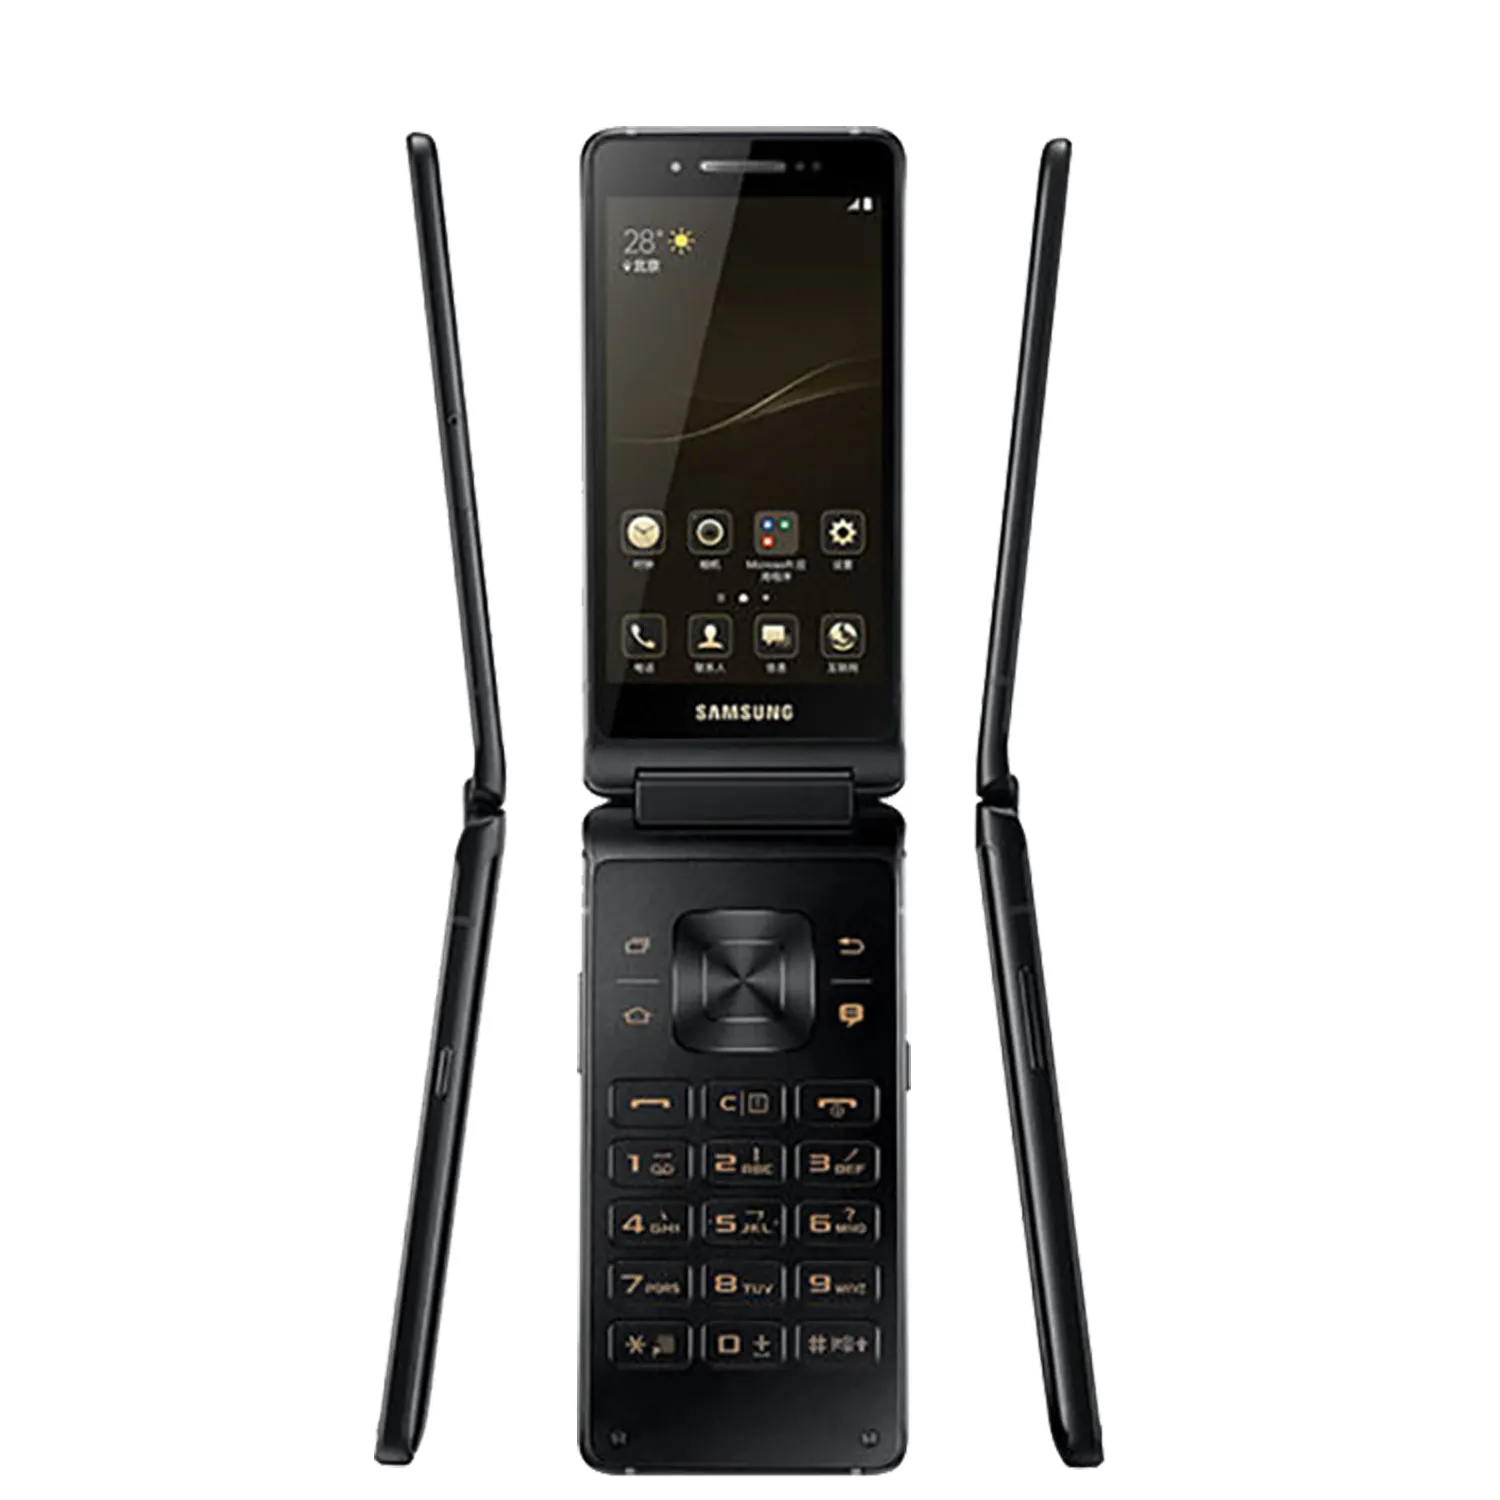 Для Samsung Leader 8 G9298 4G LTE мобильный телефон 4,2 дюймов amoleed смартфон Snapdragon 821 четырехъядерный откидной телефон Android сотовый телефон